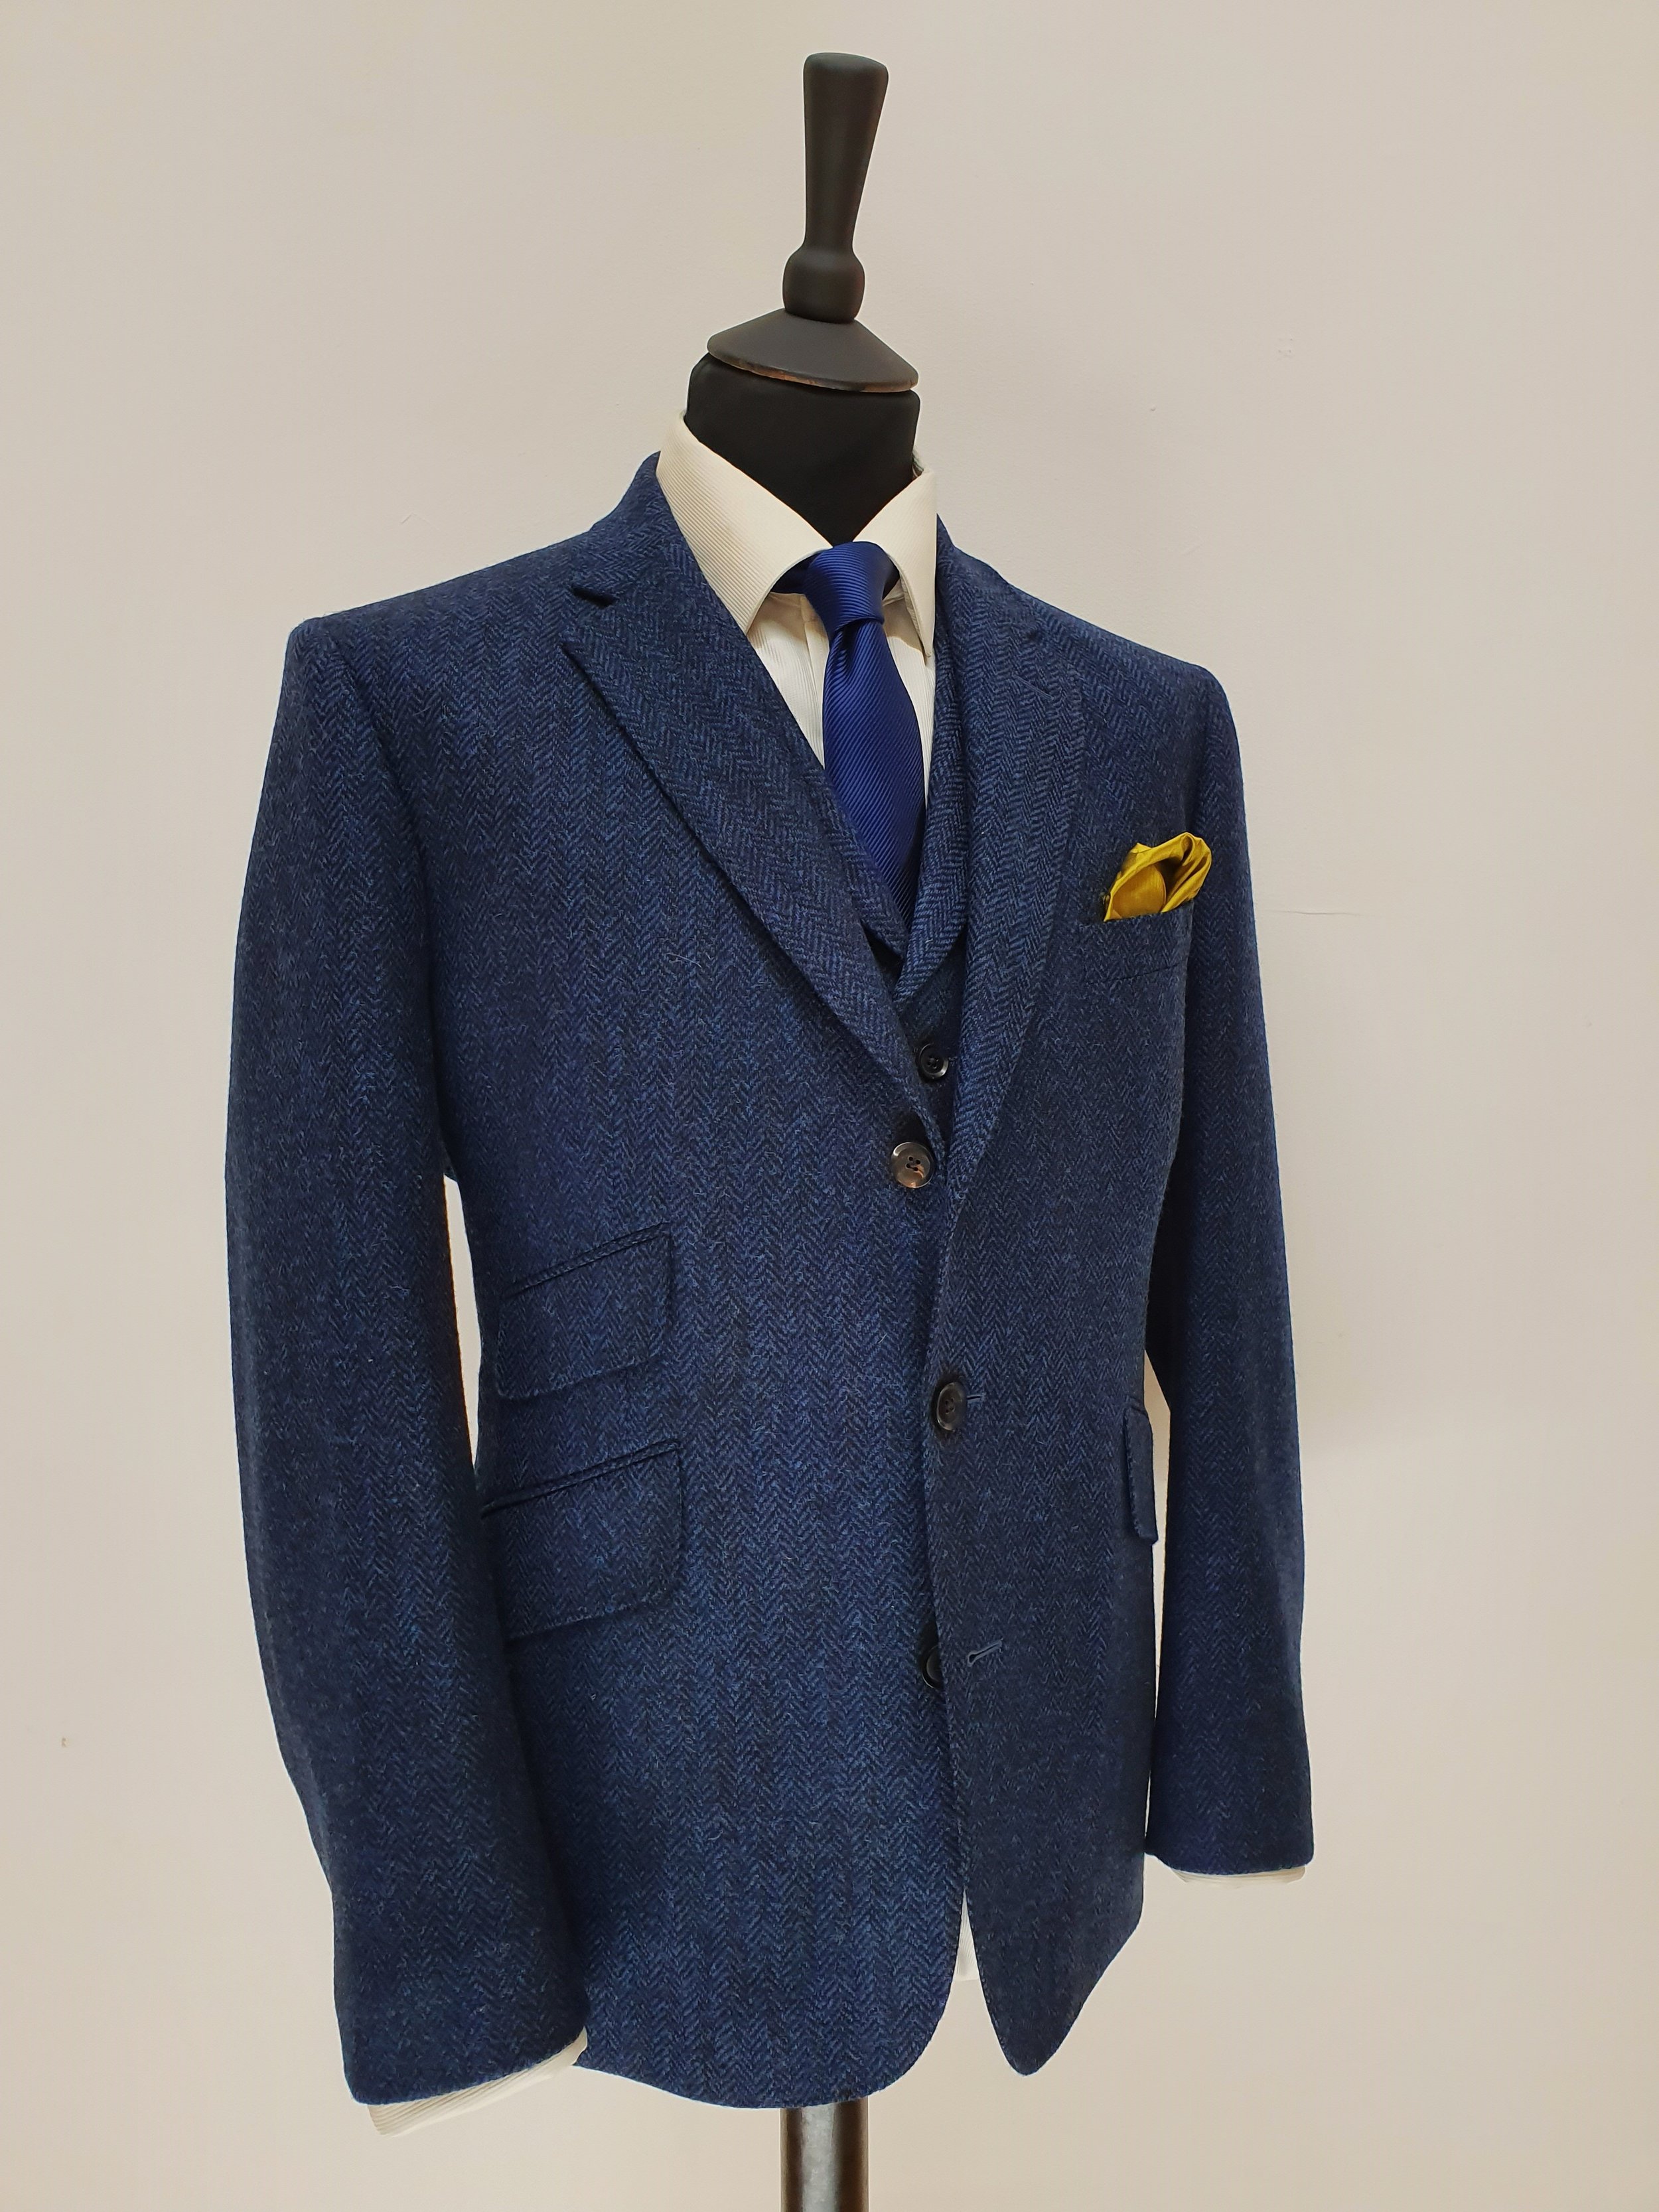 3 Piece Suit in Holland and Sherry Blue Herringbone Tweed (9).jpg